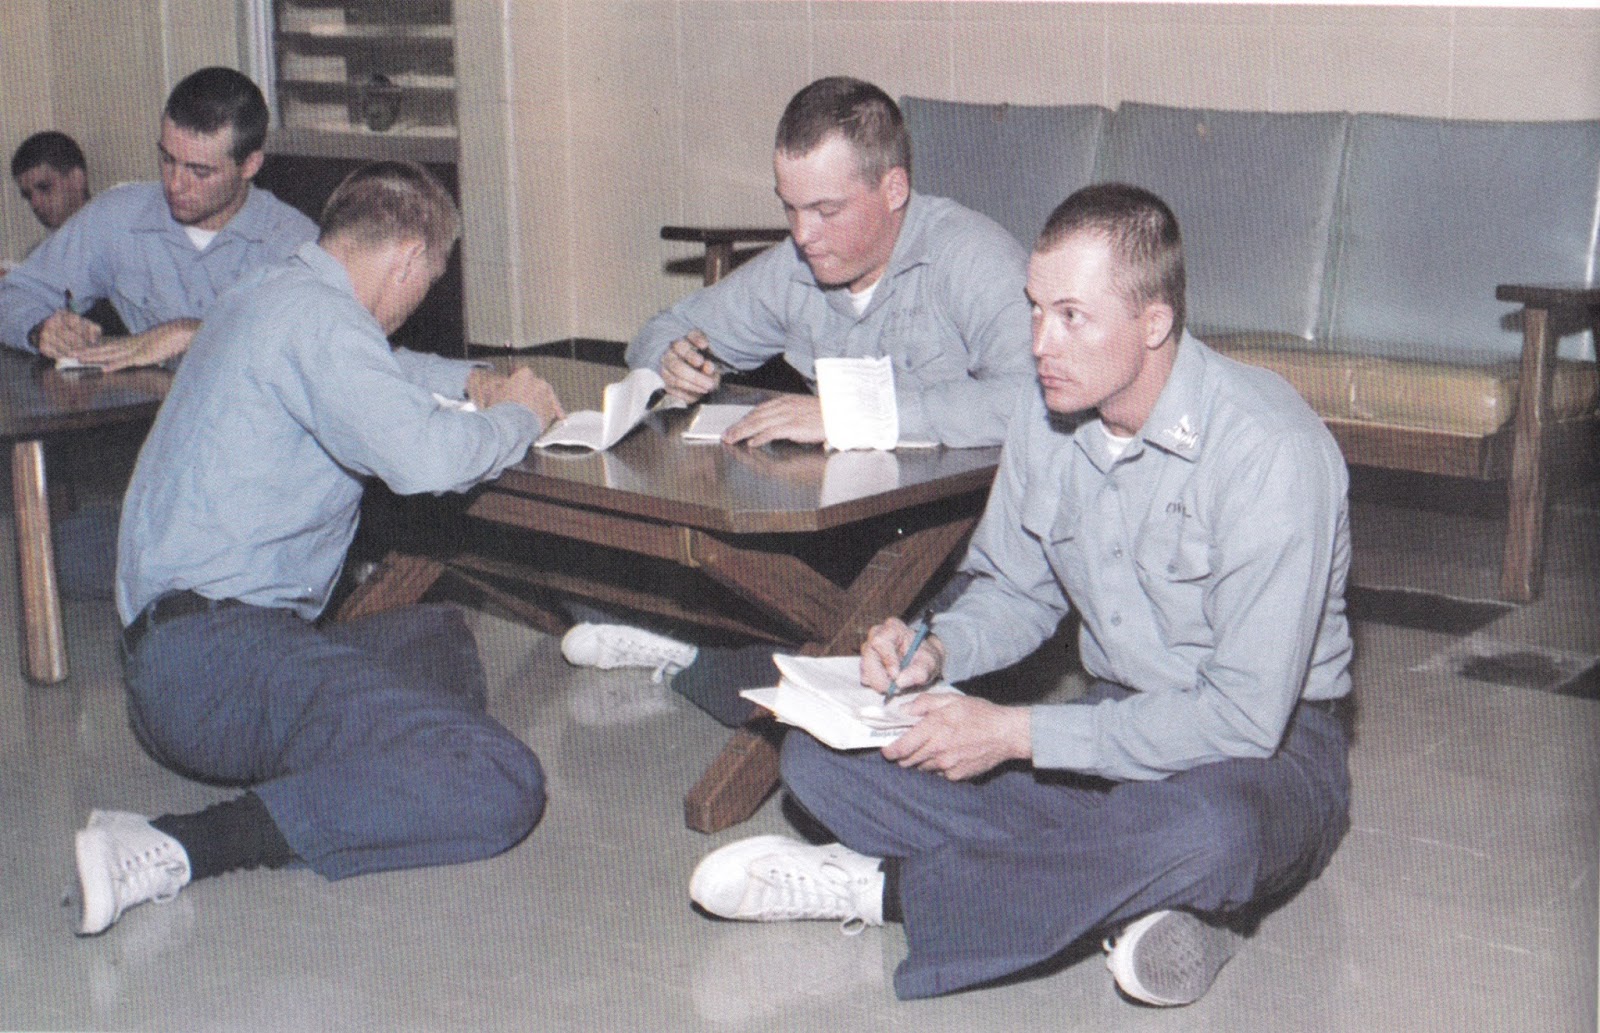 Company 42 boot camp barracks. The guys writing home Orlando, Florida 1981